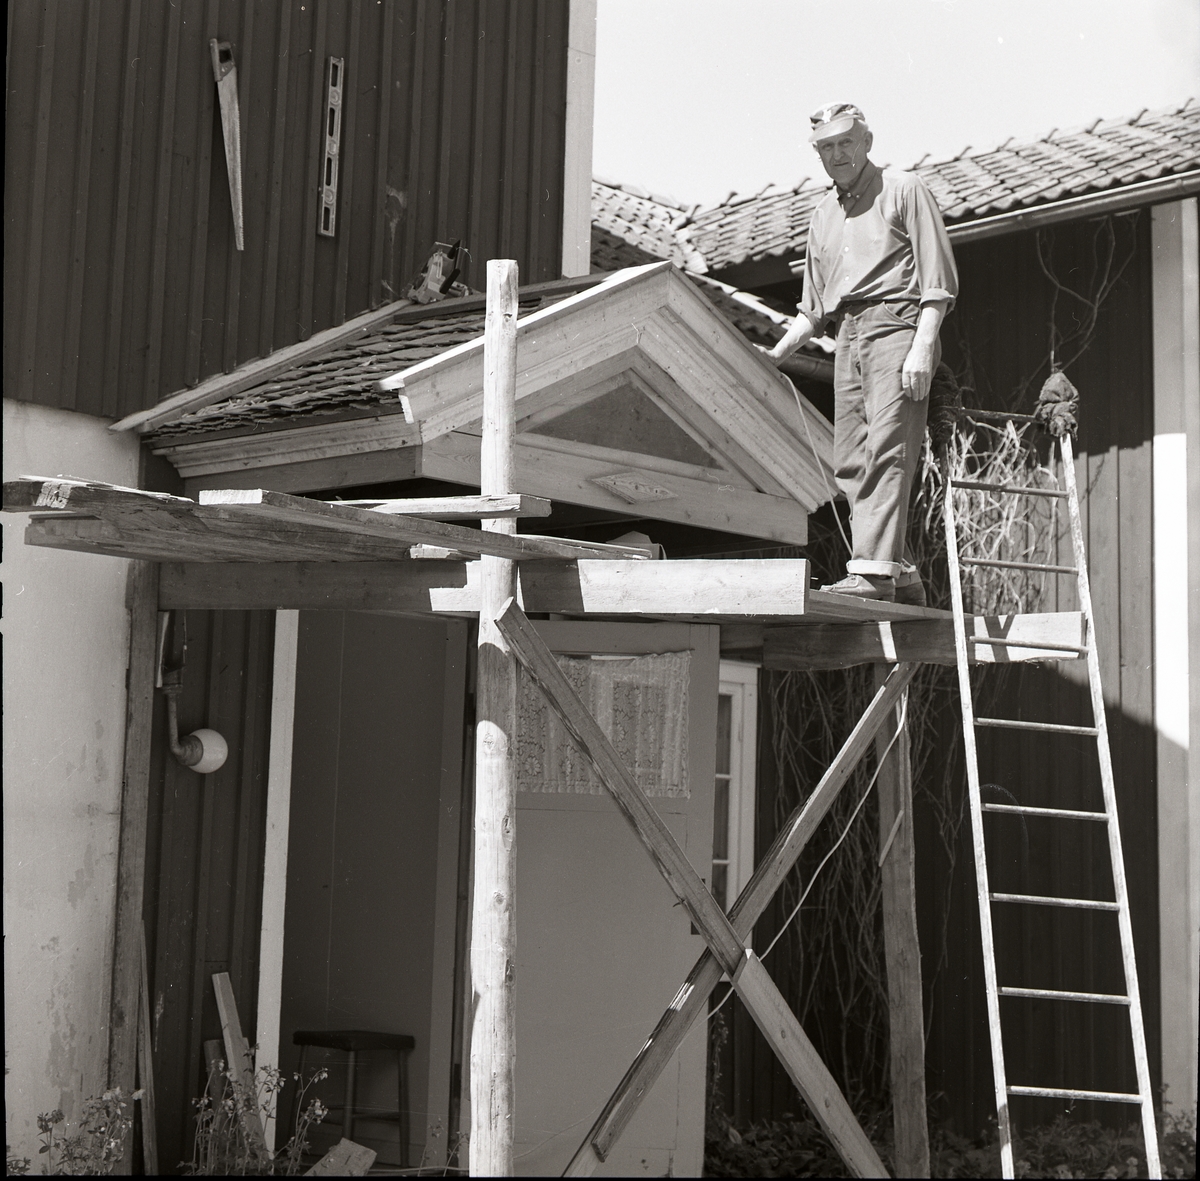 En man med keps står på en byggnadsställning och reparerar ett litet sadeltak. Bredvid honom står en stege lutad mot ställningen. På väggen hänger diverse verktyg, Sunnanåker 12 juni 1979.